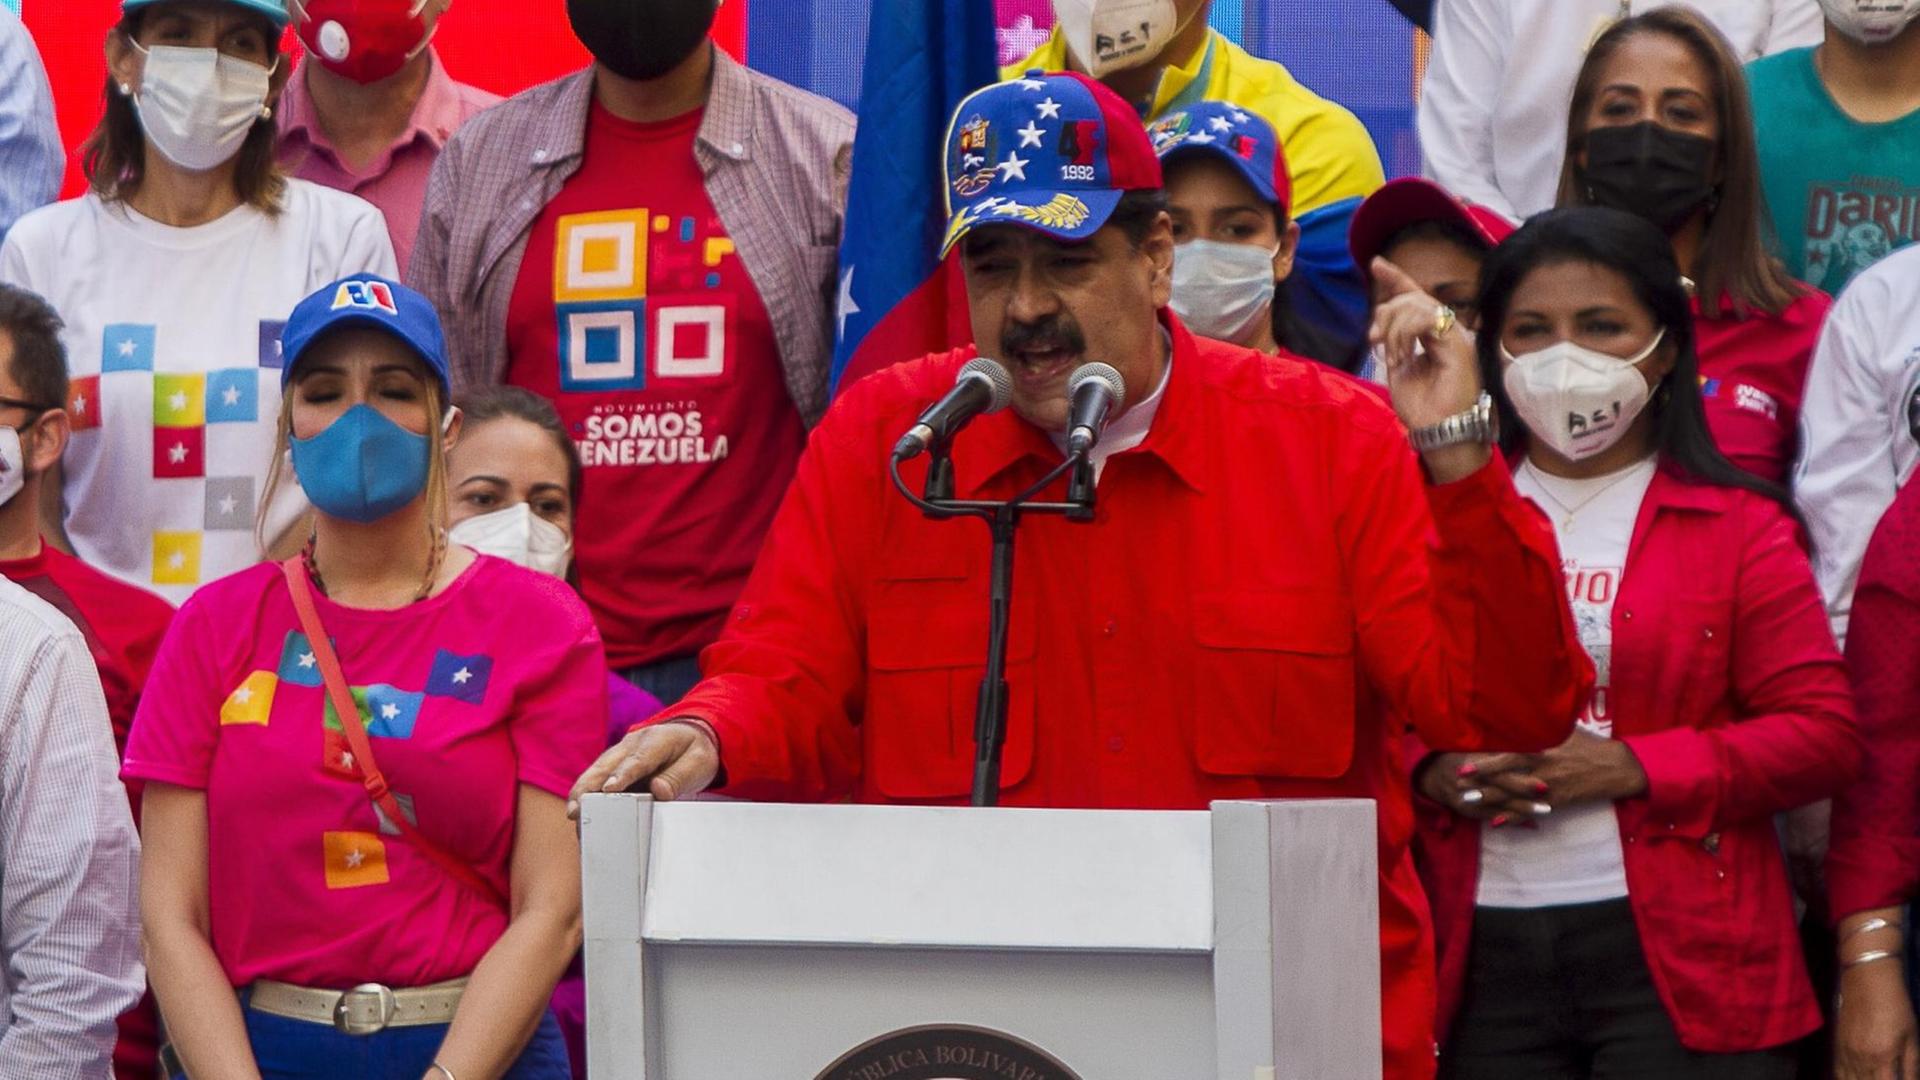 Nicolas Maduro, Präsident von Venezuela, spricht während einer Abschlusskundgebung. Am 6. Dezember soll eine umstrittene Parlamentswahl in dem politisch tief gespaltenen südamerikanischen Land stattfinden. Große Teile der Opposition befürchten Wahlbetrug und wollen die Abstimmung deshalb boykottieren.